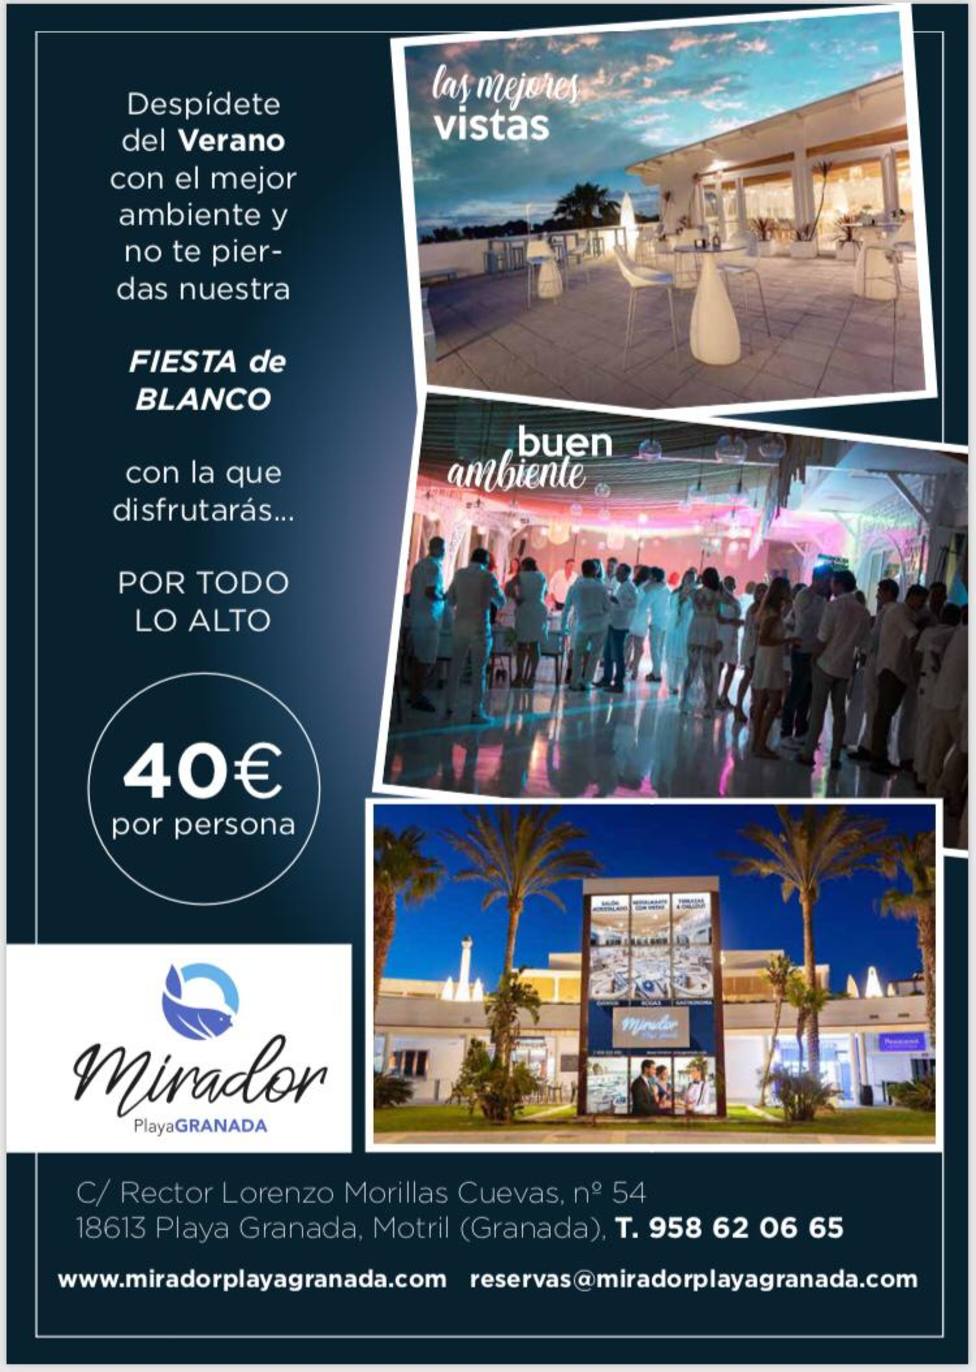 Fiesta de Blanco Mirador Playa Granada